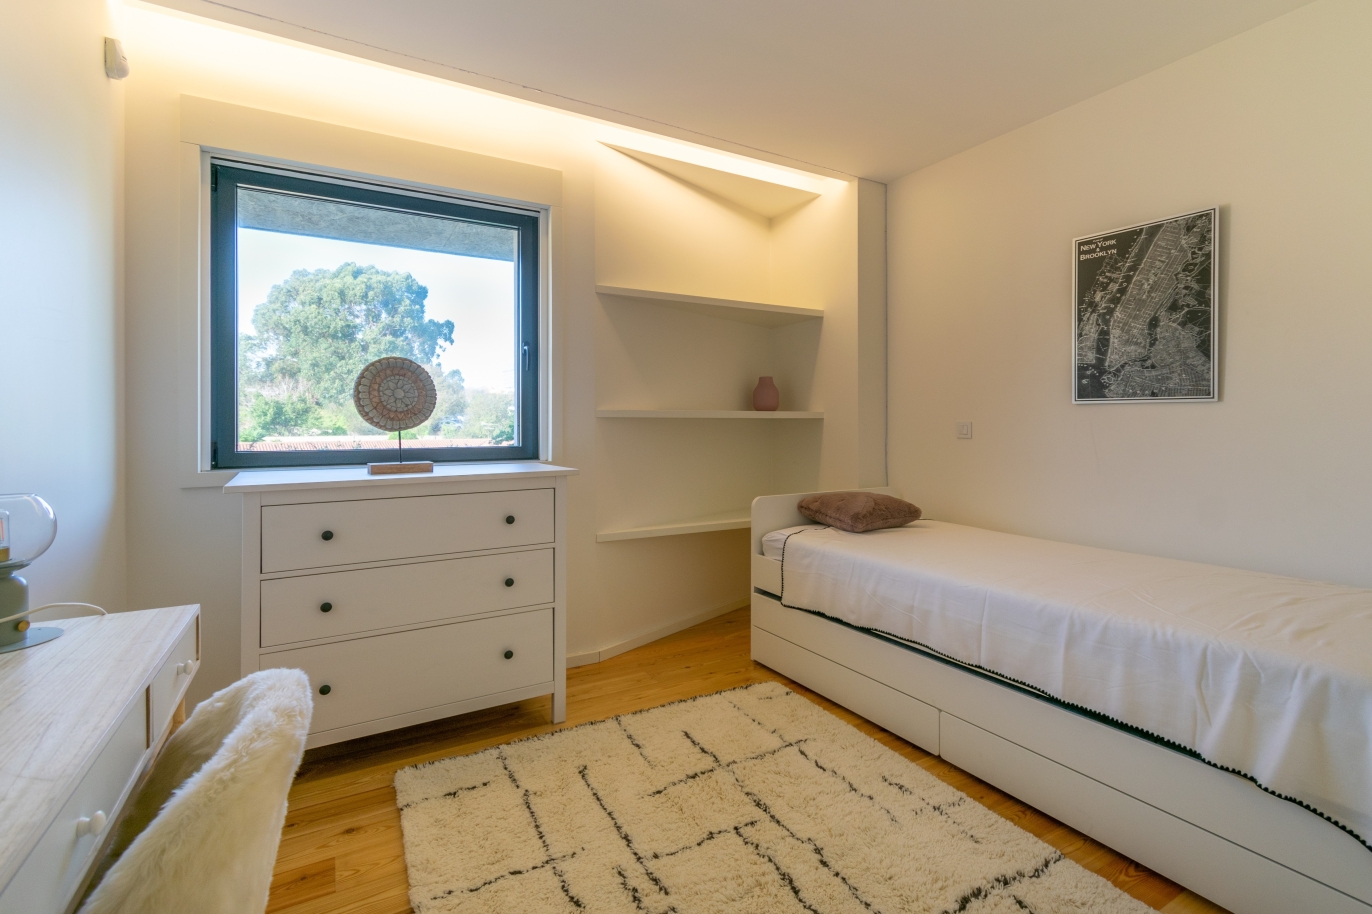 3 bedroom apartment, for sale, near Parque da Cidade, Porto, Portugal_246174